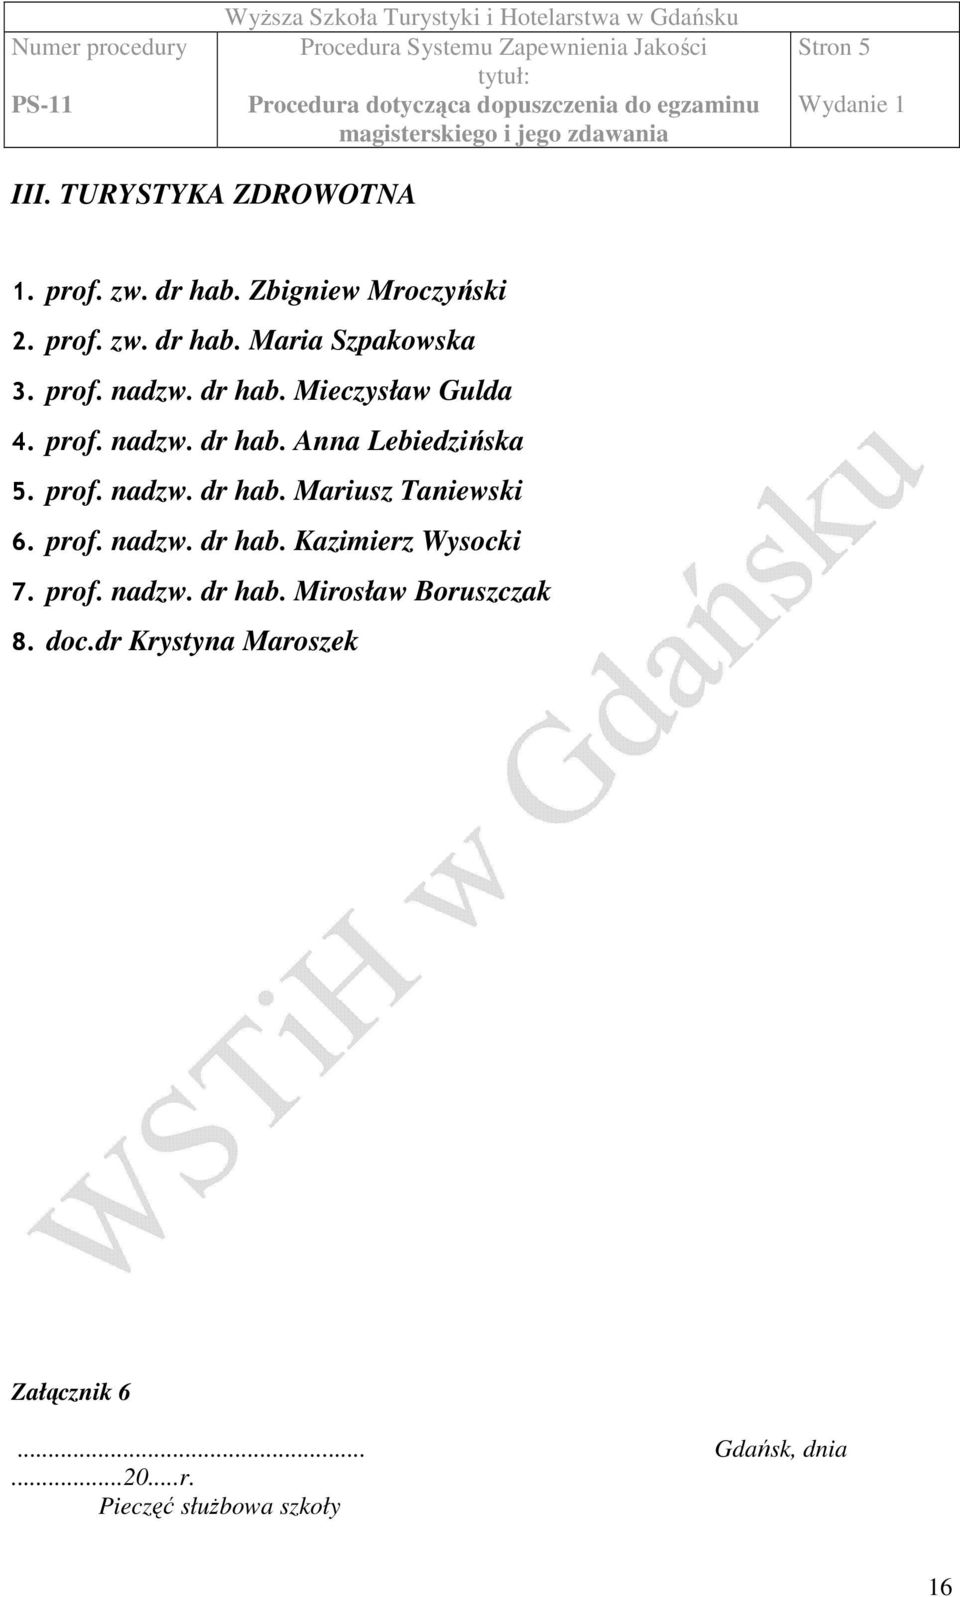 prof. nadzw. dr hab. Kazimierz Wysocki 7. prof. nadzw. dr hab. Mirosław Boruszczak 8. doc.